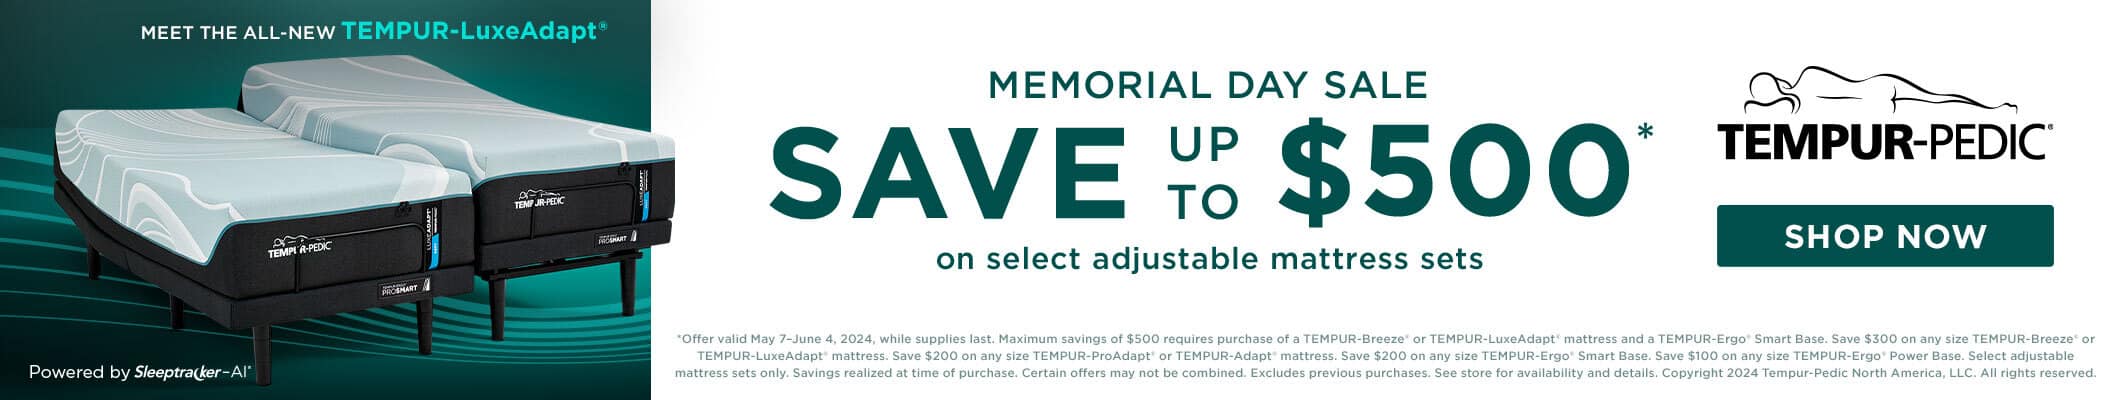 Tempur-pedic Memorial Day Sale